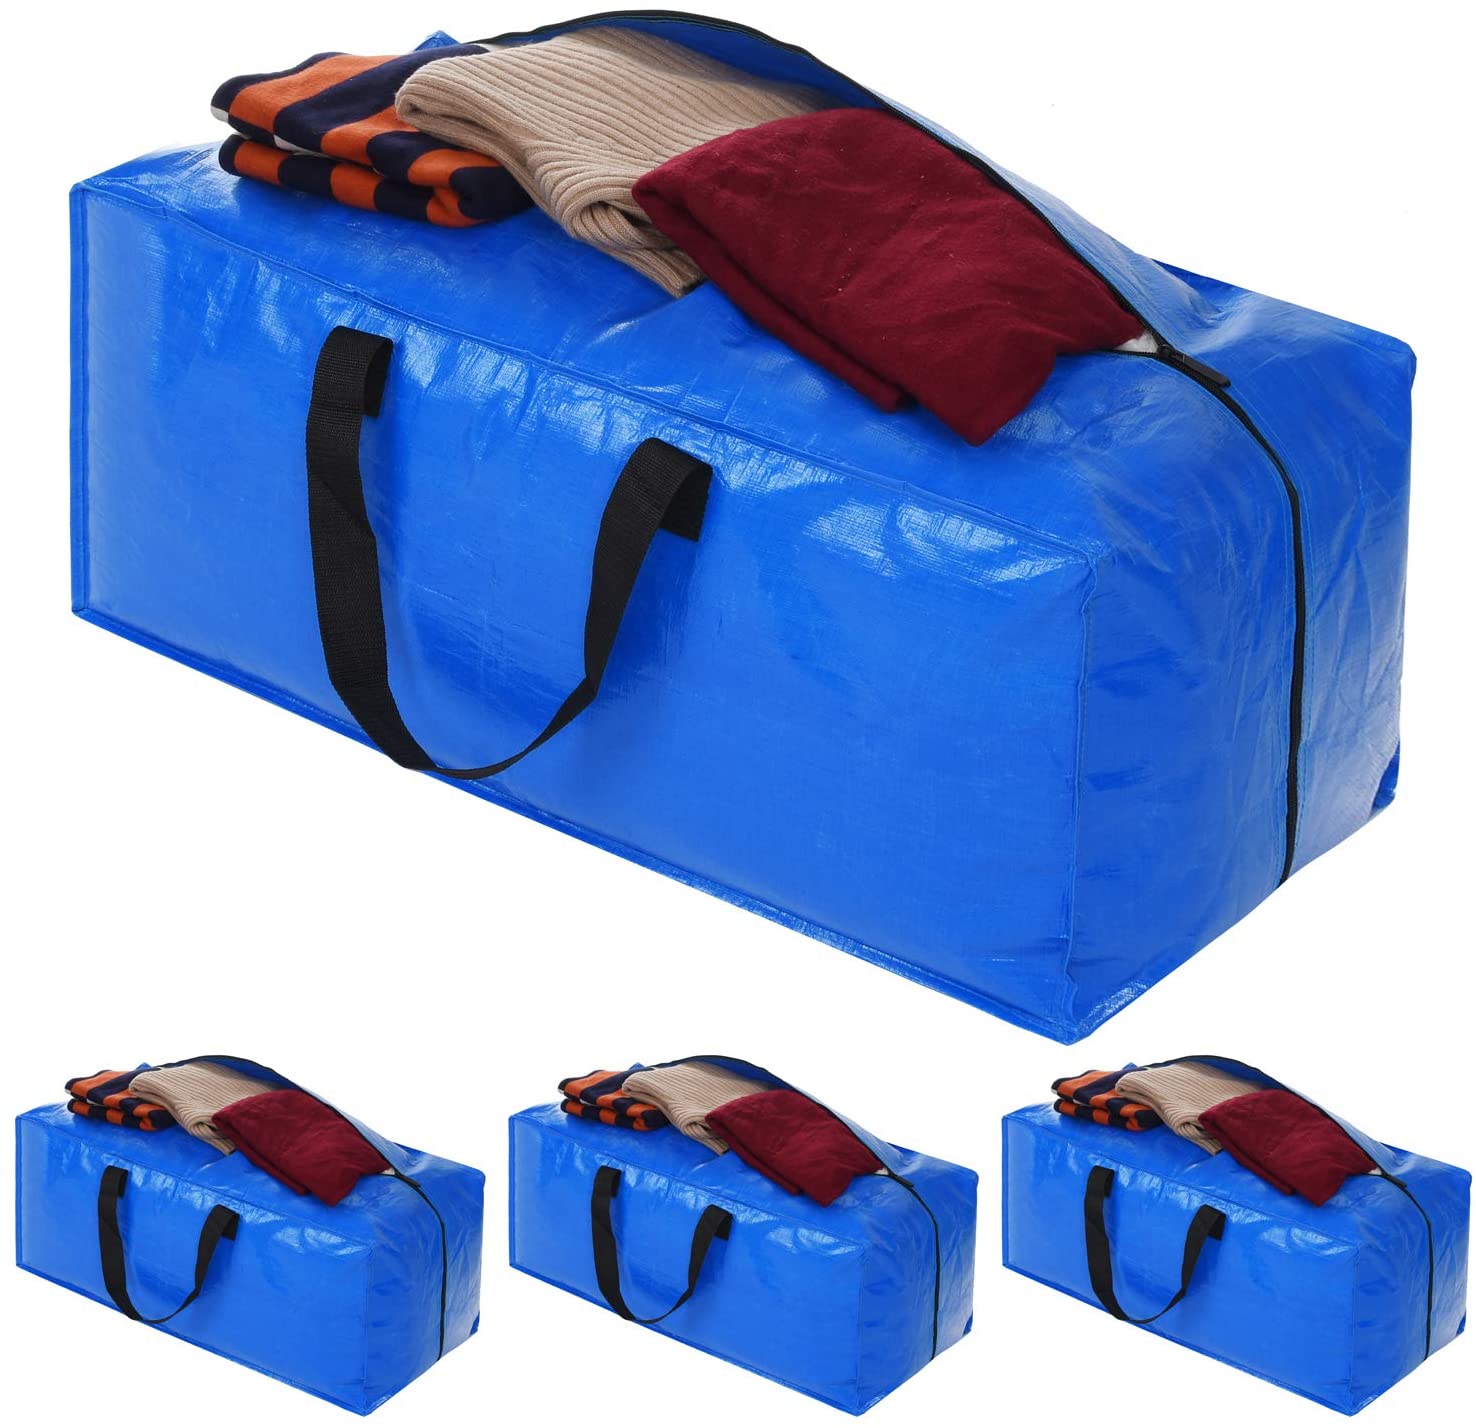 Acnusik - 4 bolsas extragrandes con cremallera para guardar ropa, cobijas,  para mudanzas a la universidad, almacenamiento de ropa, color azul